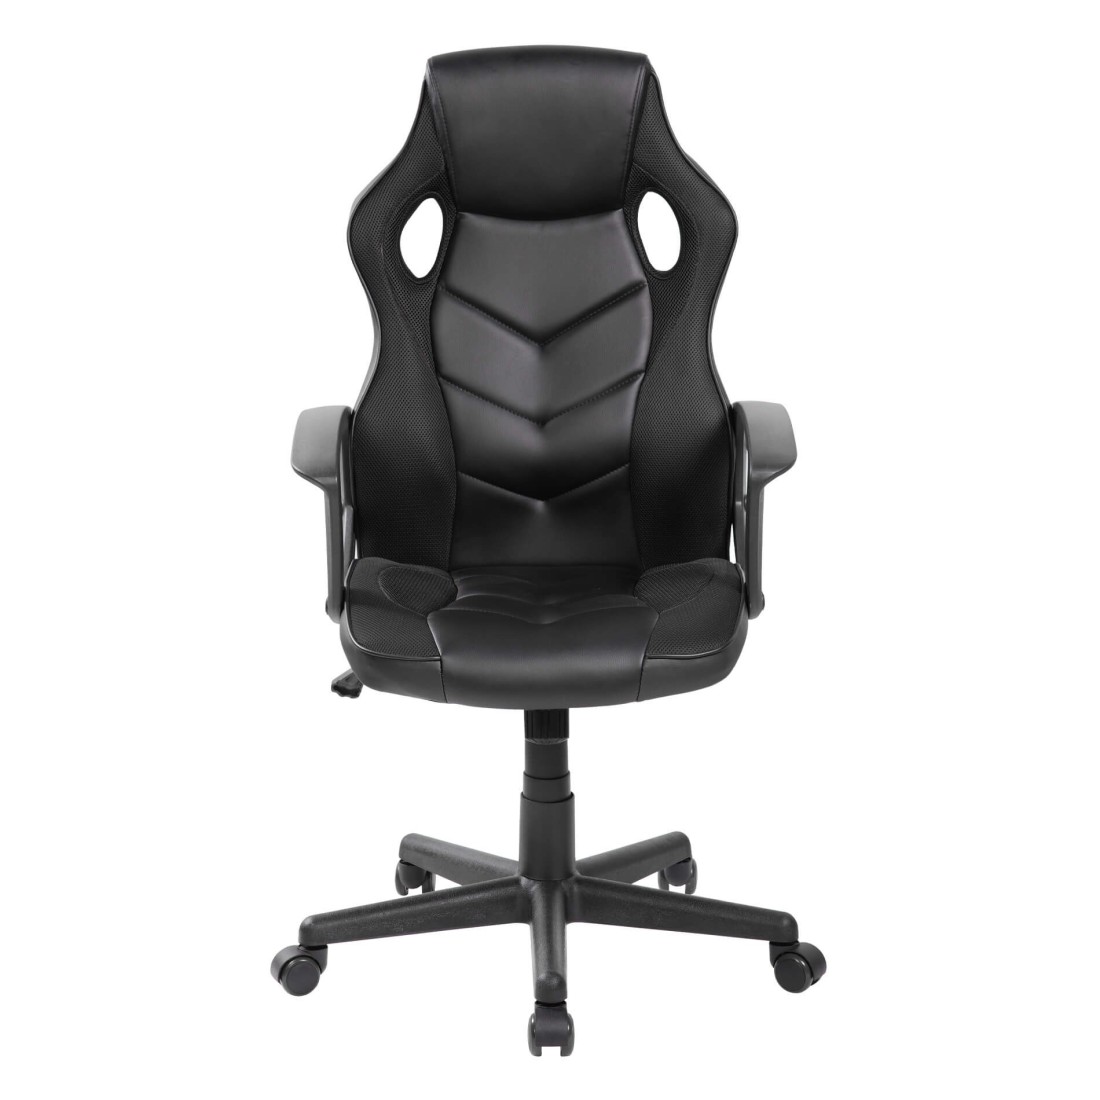 Chaise gaming ergonomique en cuir synthétique noir - Mobili Rebecca